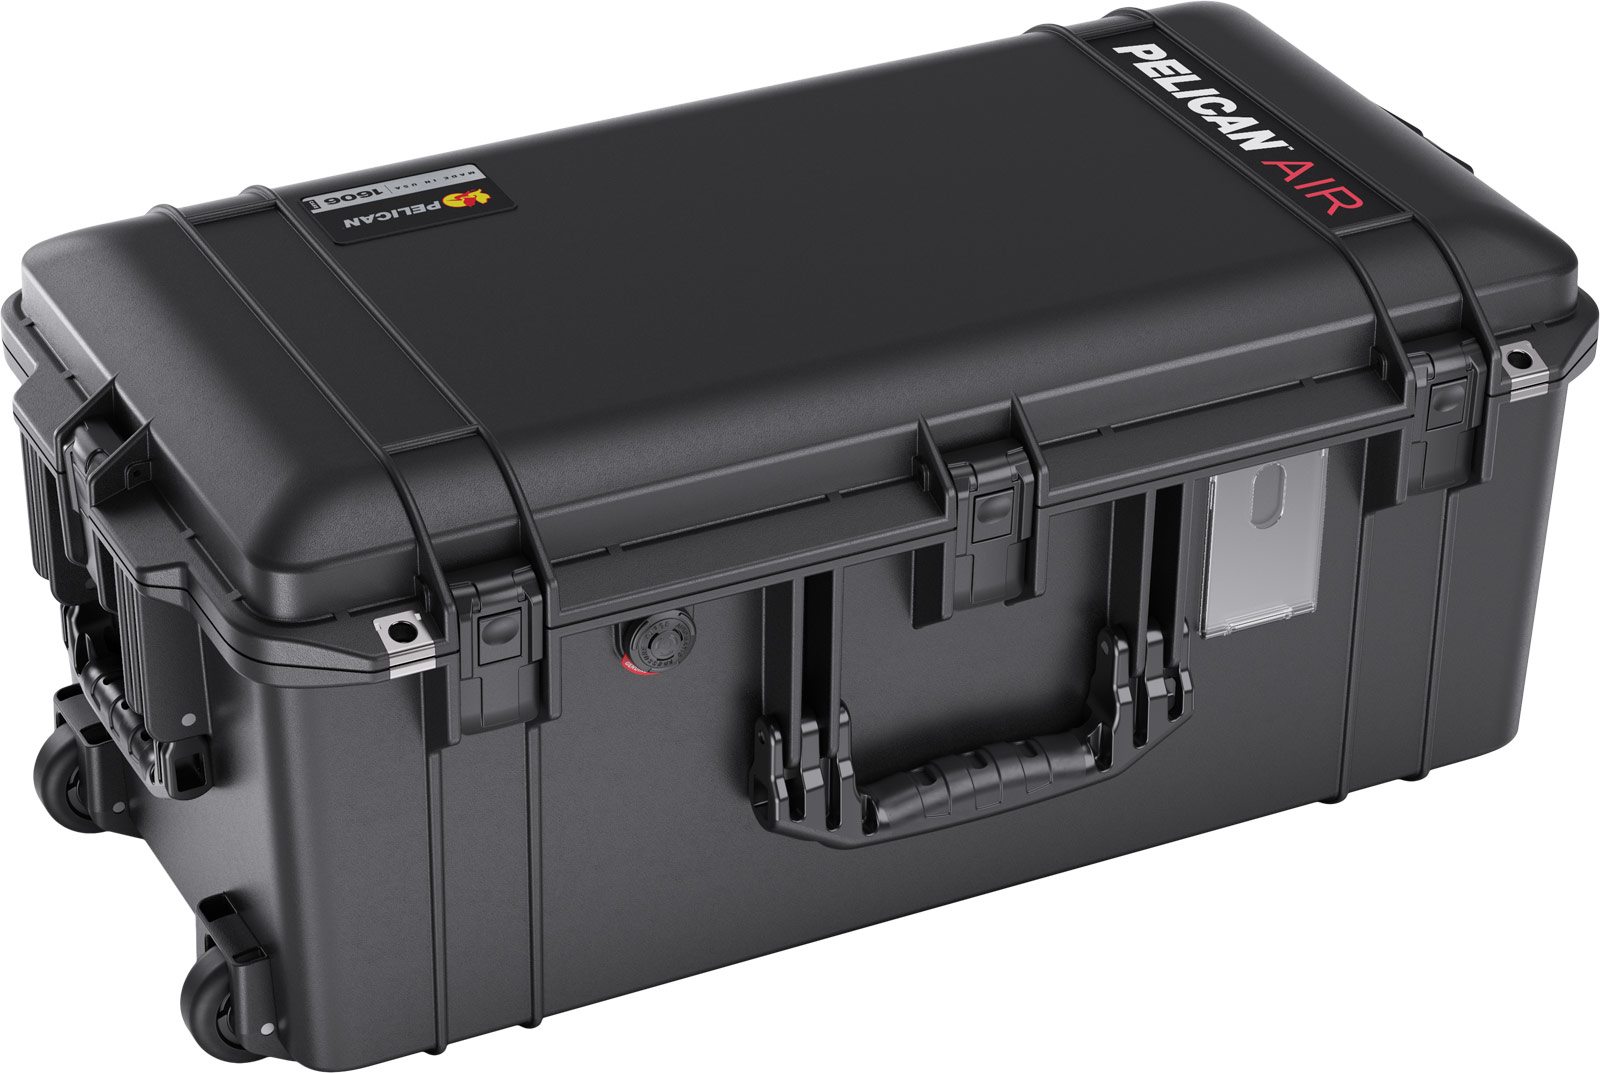 PELICAN（ペリカン）エアケース 1606 フォームなし BLACK [ブラック] [016060-0010-110] ハードケース 防水性・耐衝撃性・防塵性 保護ケース カメラ用品